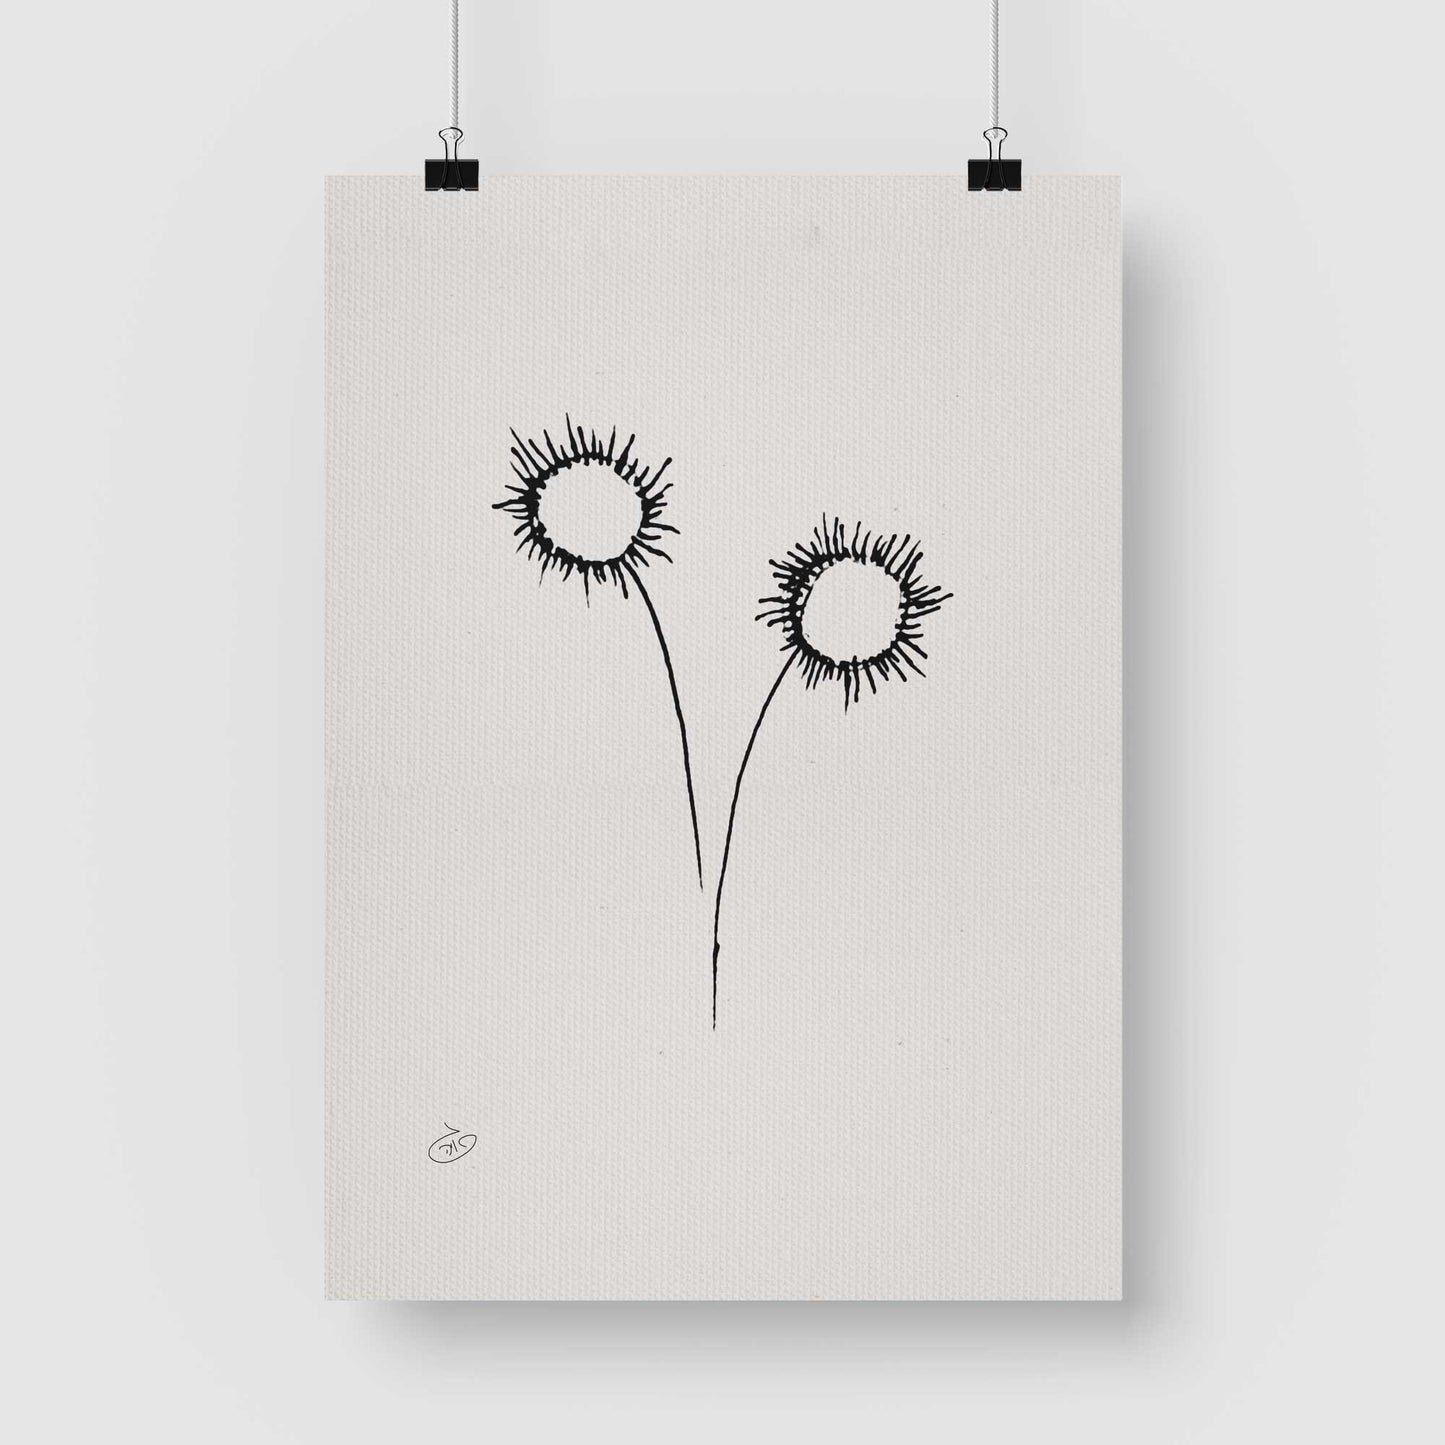 פוסטר One Line Flower - Sunny Poster ציור מקורי של גאיה המקדם את המודעות לאלימות בין בני זוג בכלל וכלפי נשים בפרט